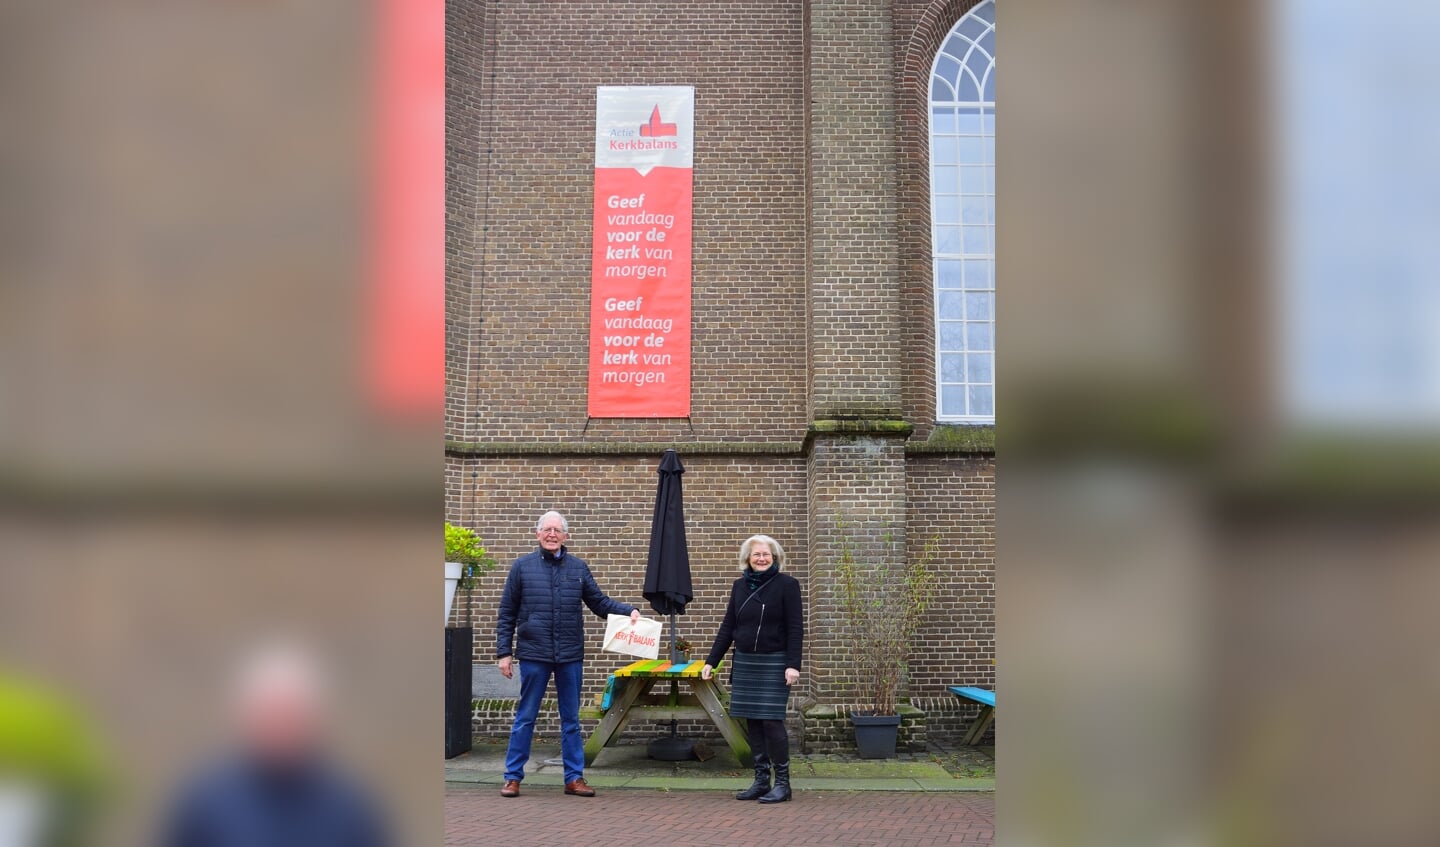 Jan van Dijk en Joke Cornelissen brengen de actie Kerkbalans bij de Ruurlose Dorpskerk onder de aandacht. Foto: PR